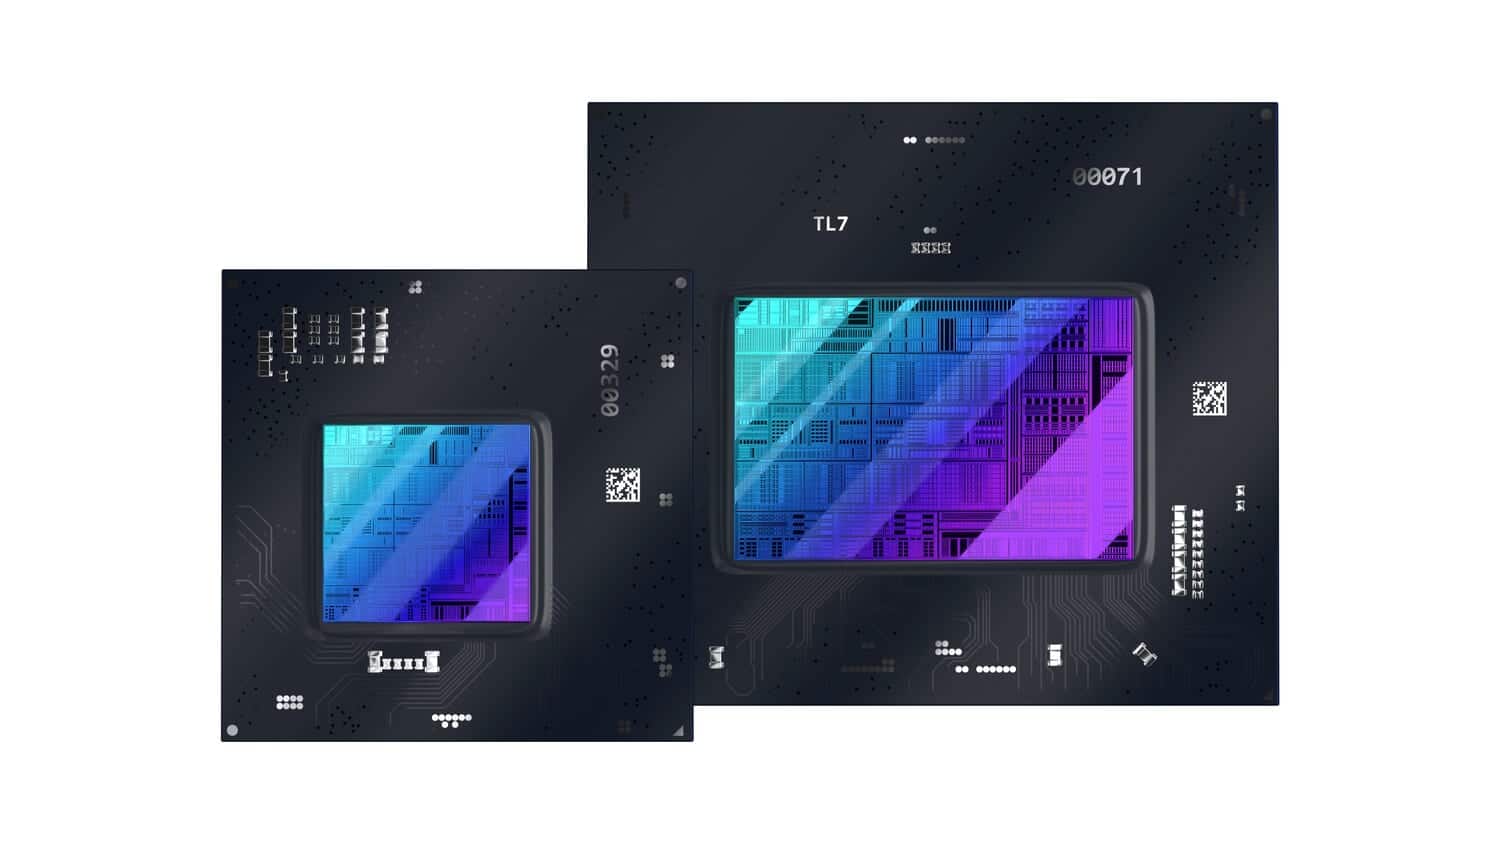 「Intel Arc Aシリーズ」のデスクトップ向けグラフィックボードは5つのモデルが確認されている